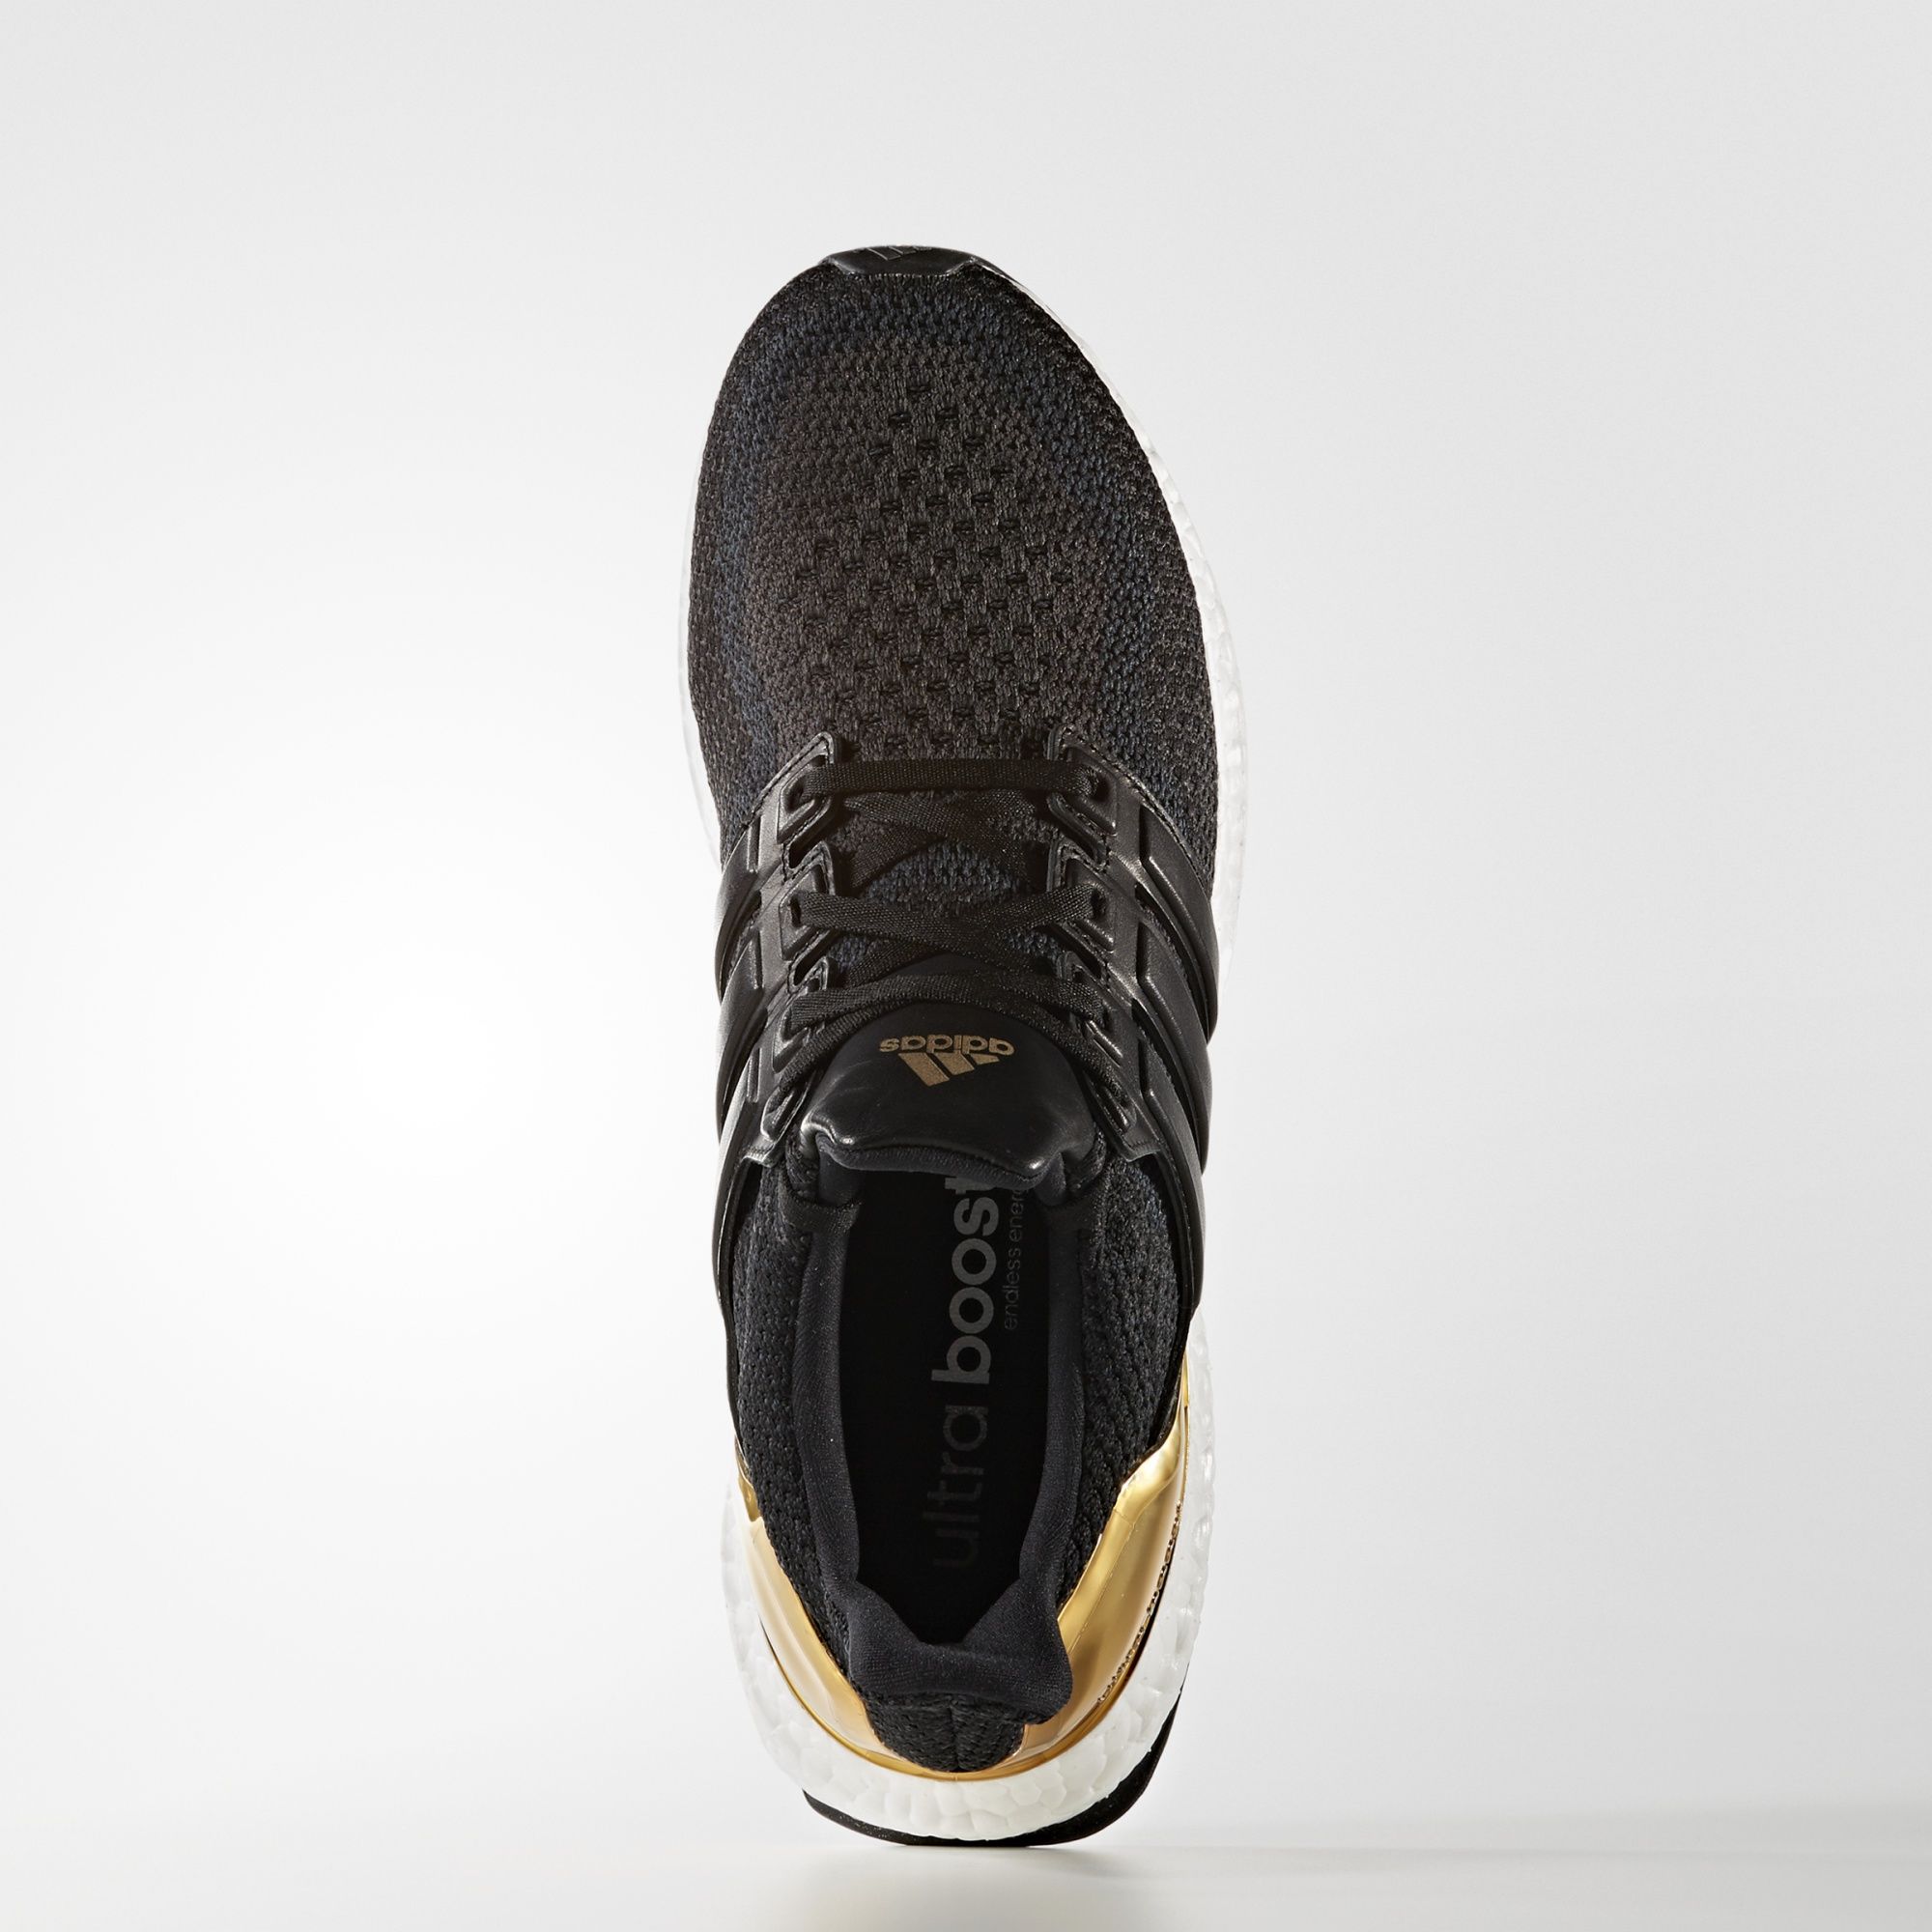 Adidas Ultra Boost LTD
Core Black / Kurz Gold Foil 